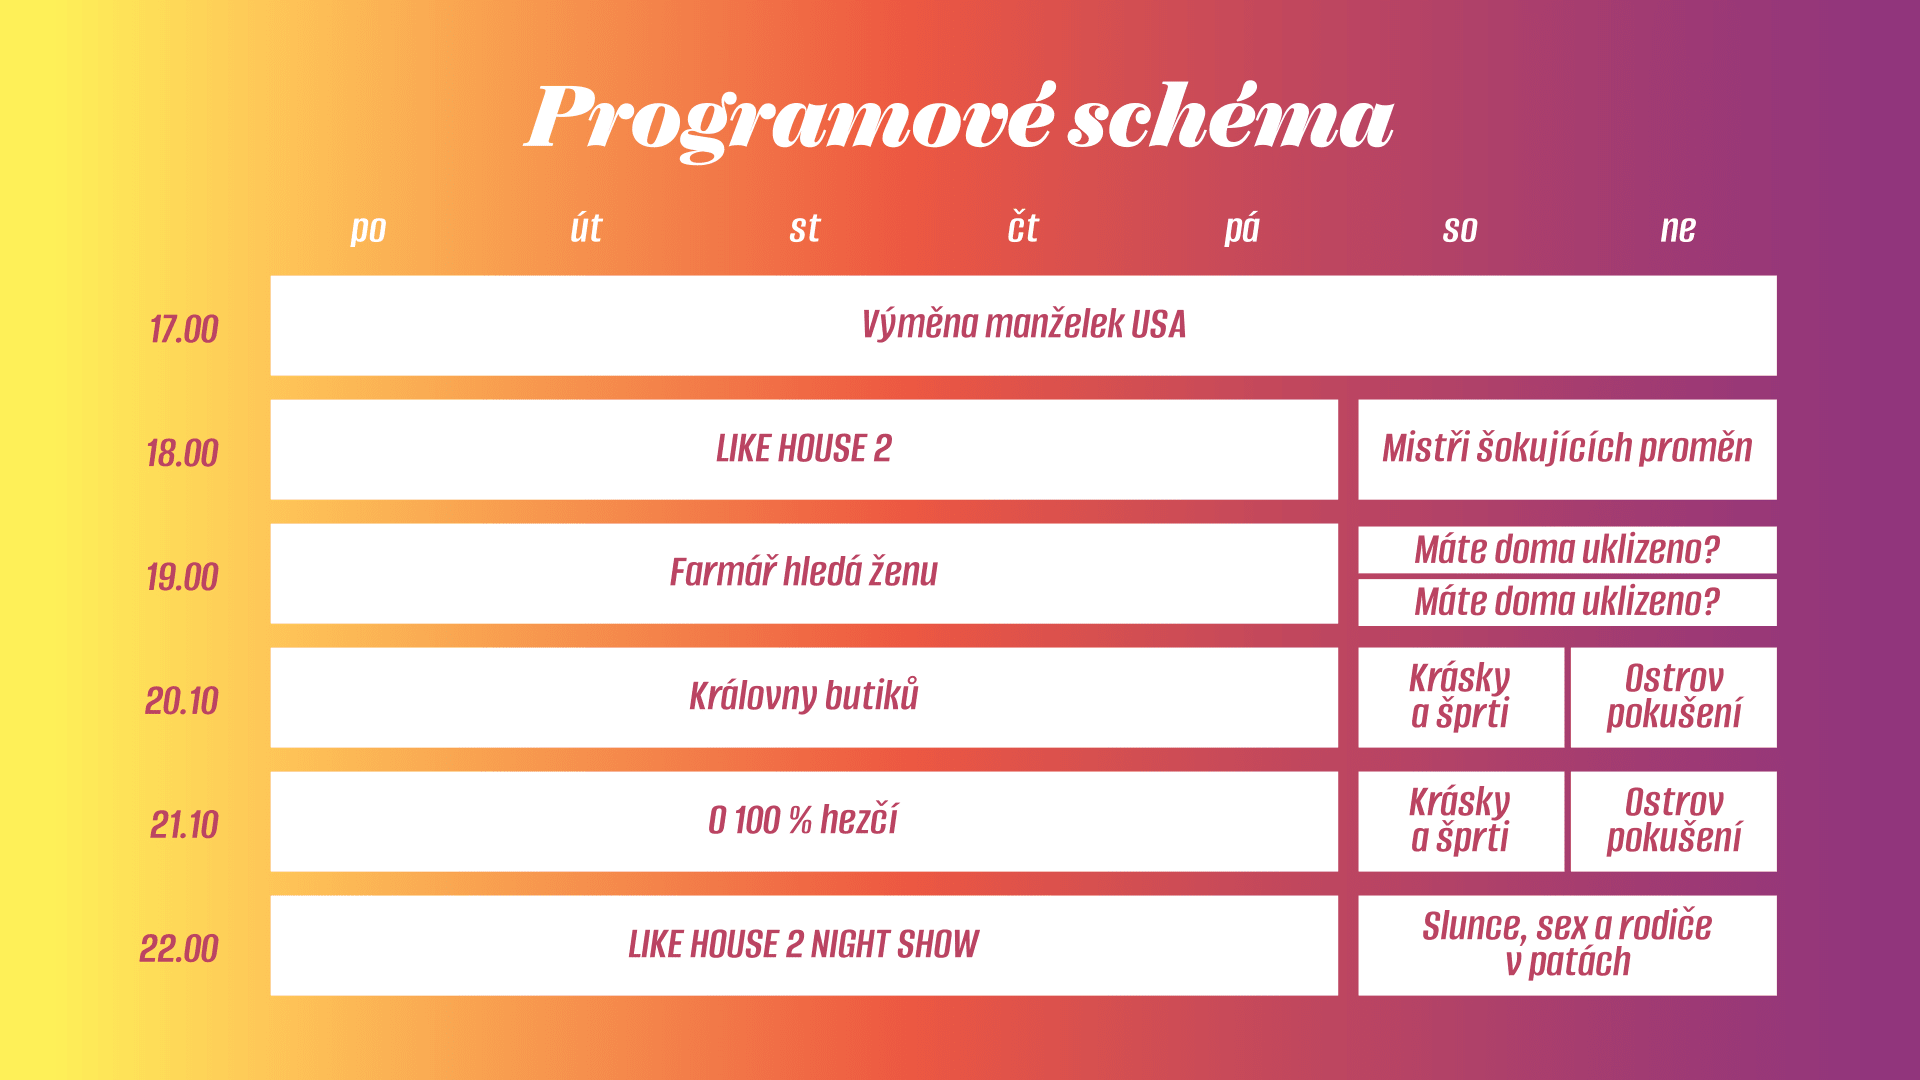 Programové schéma Prima SHOW.